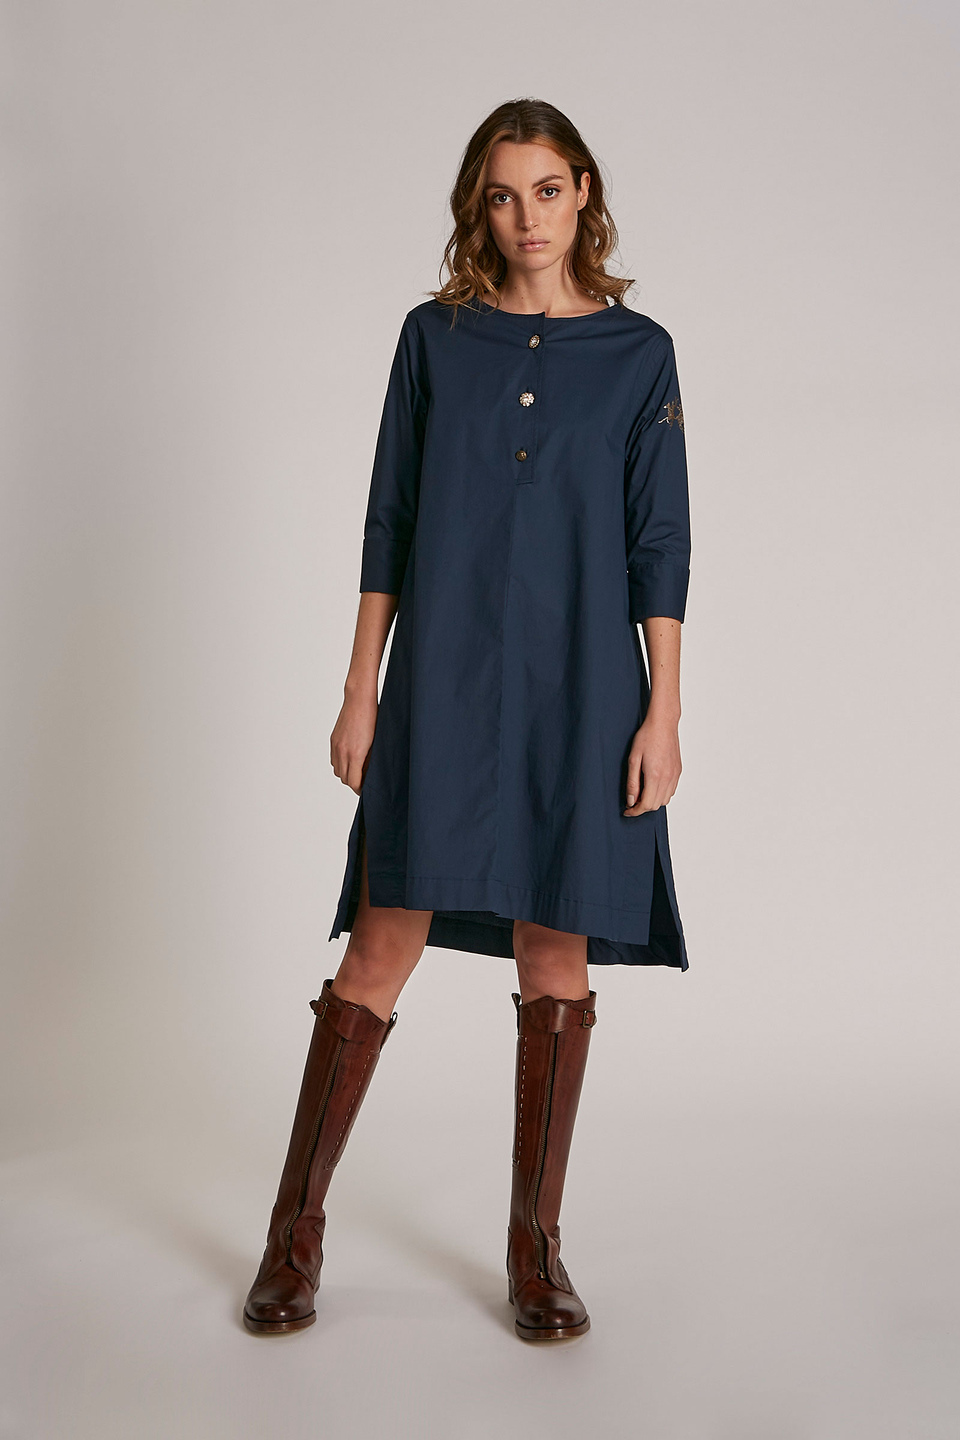 Robe femme en coton stretch à manches courtes et coupe classique - La Martina - Official Online Shop